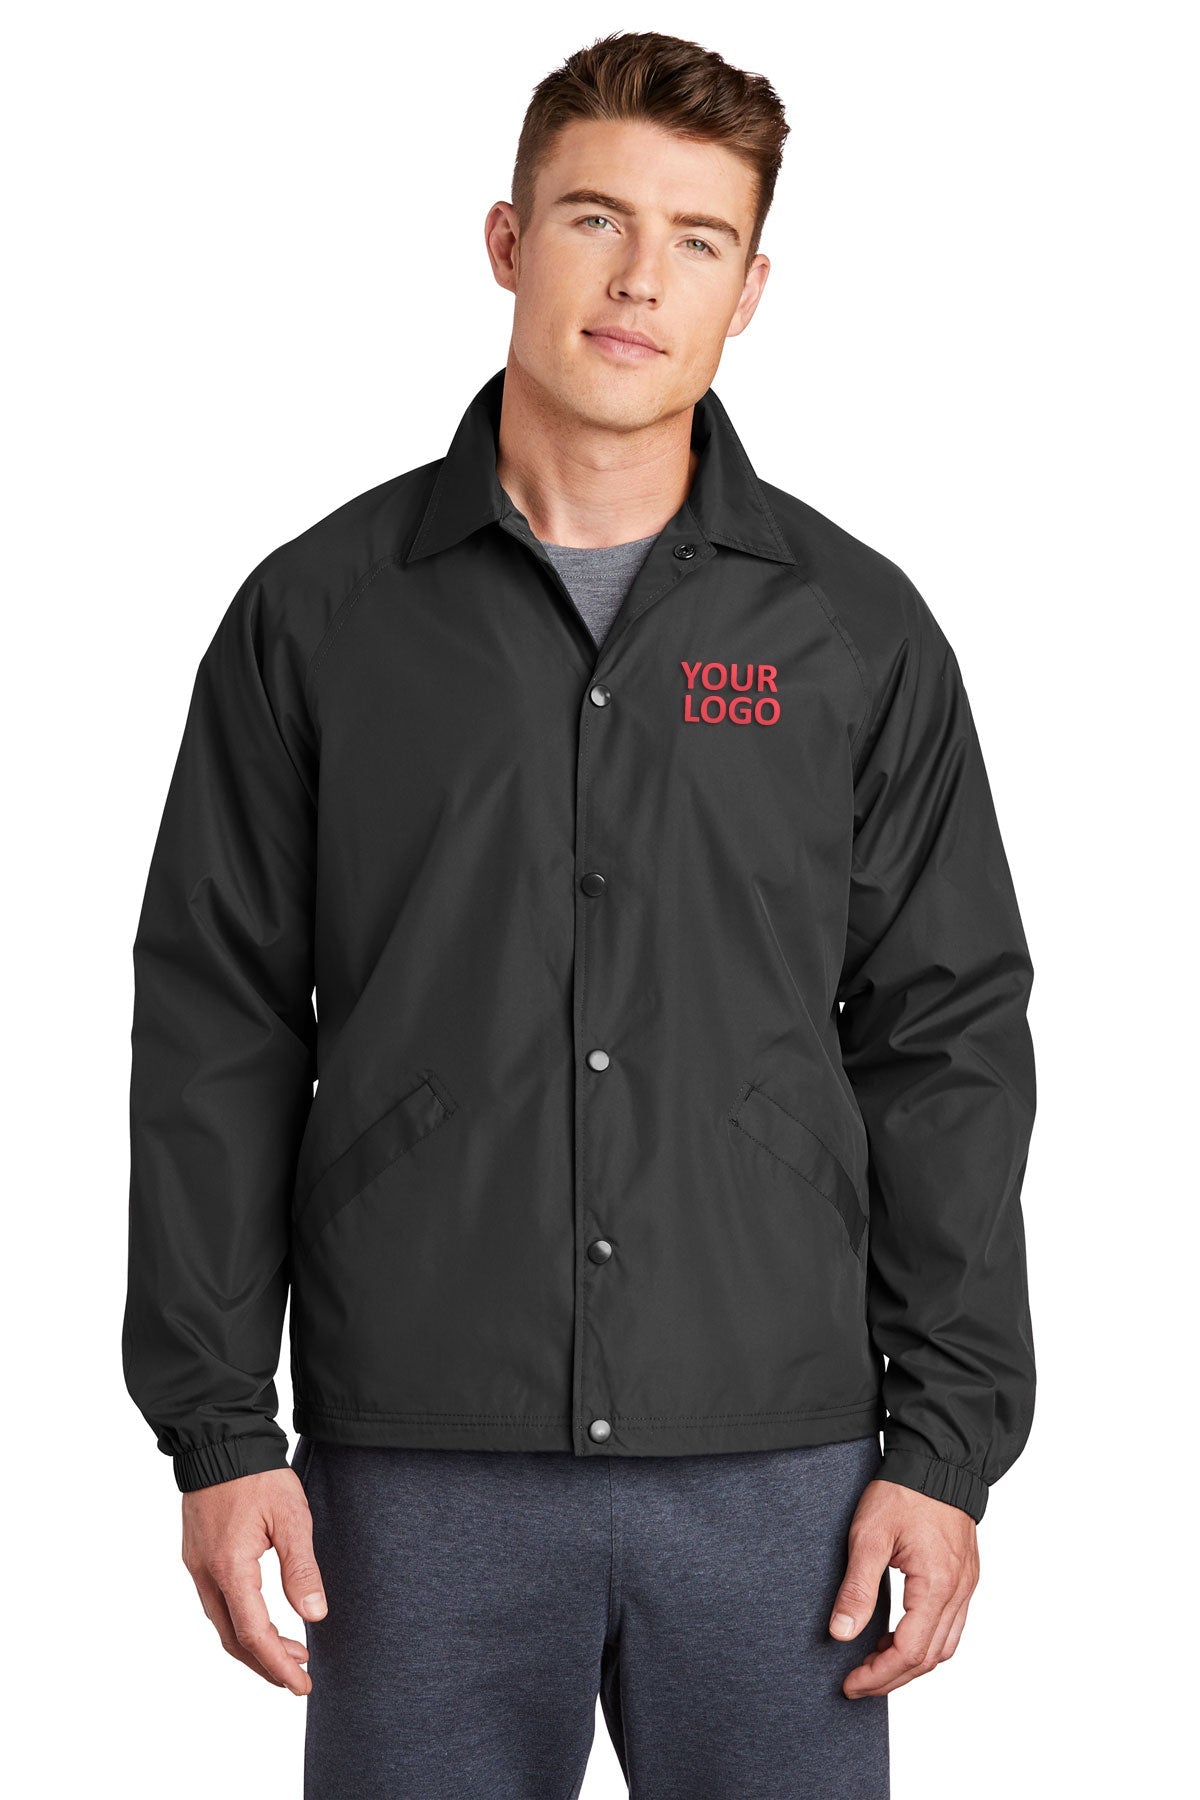 Sport-Tek Black JST71 embroidered jacket custom